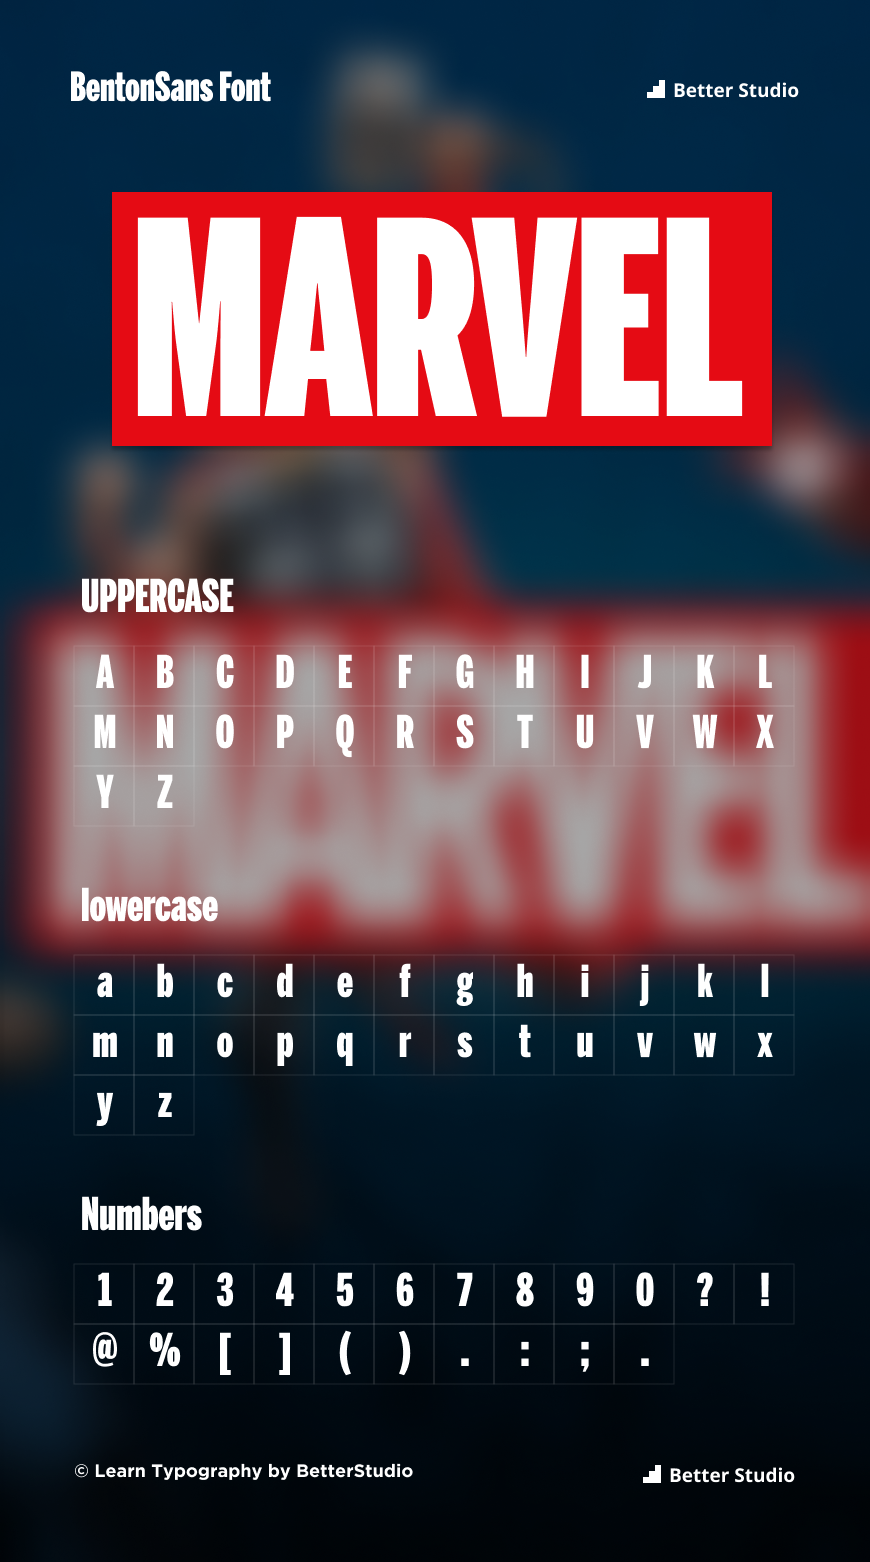 Marvel Font: Download Font and Logo FREE!